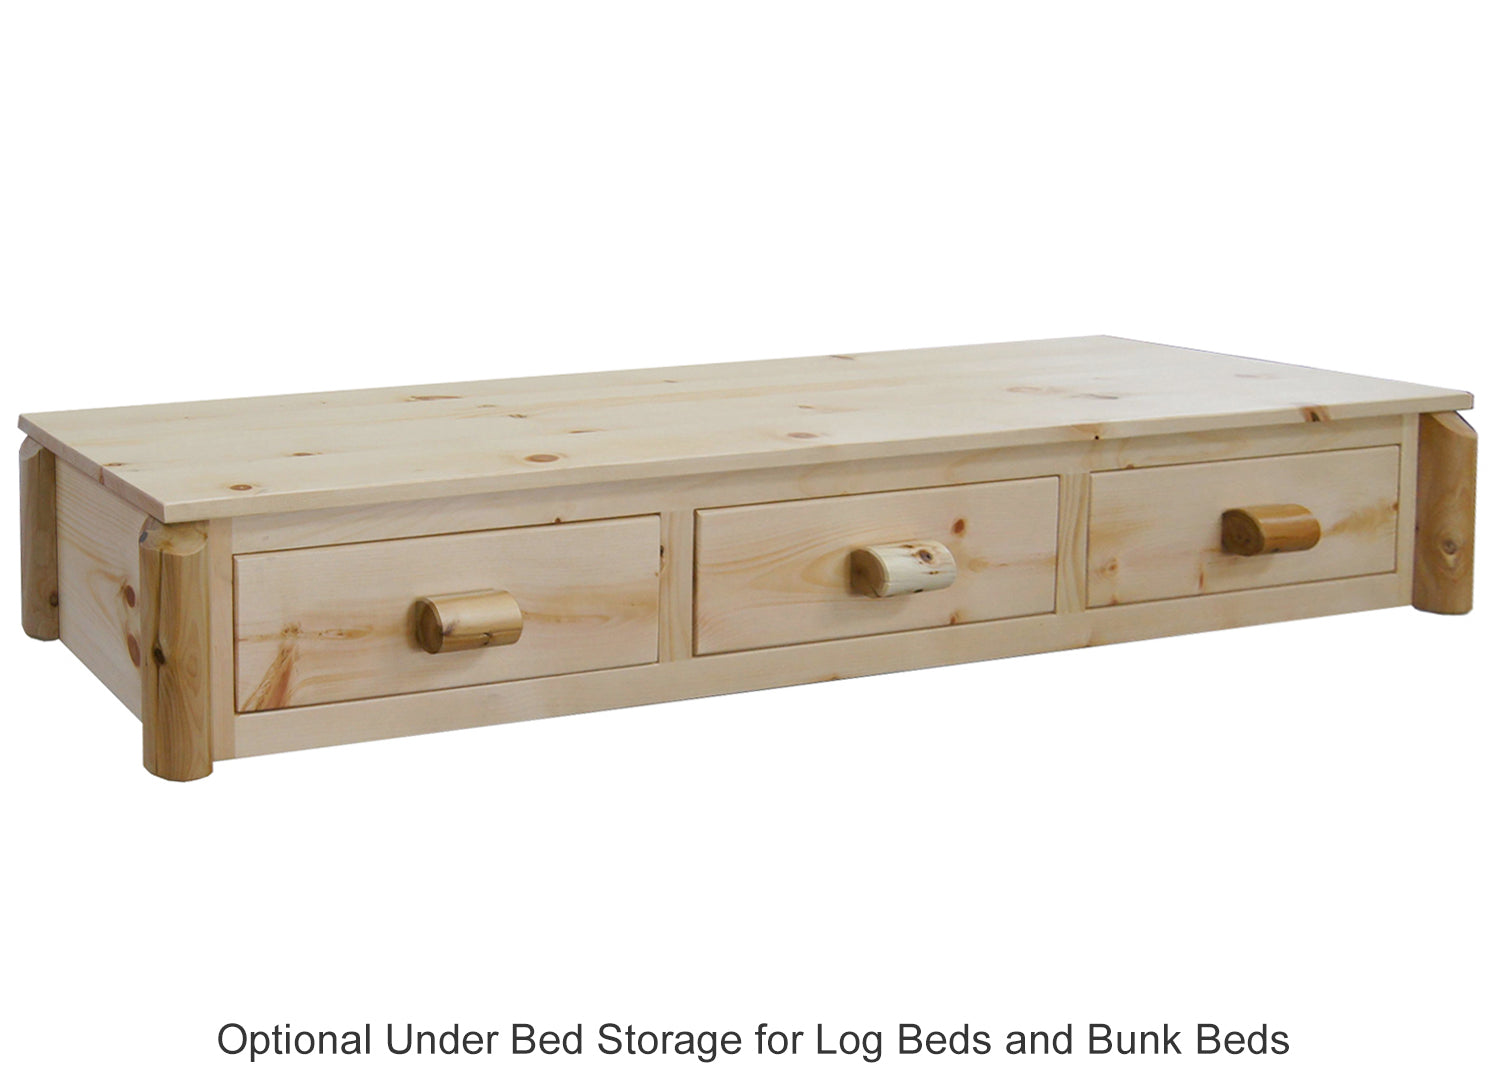 Optional Under Bed Storage for Log Beds